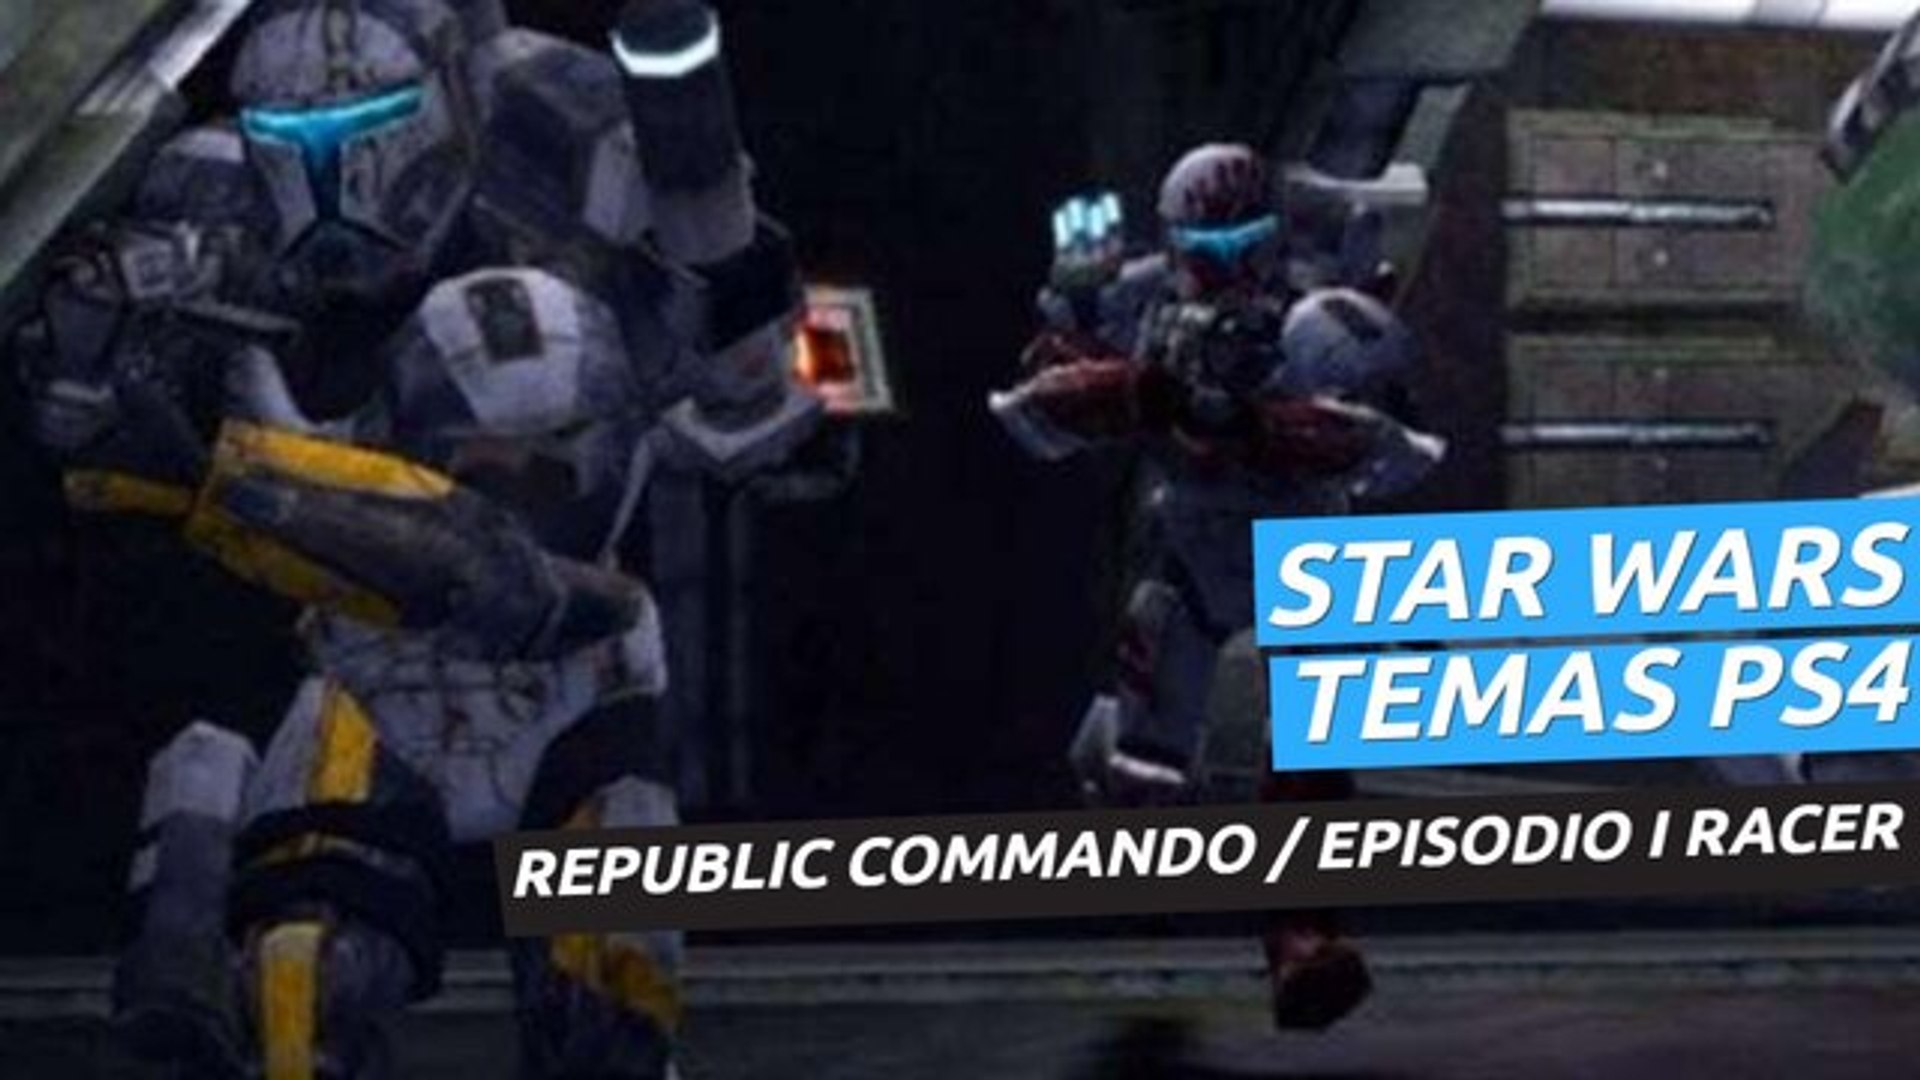 Temas de Star Wars en PS4 - Republic Commando y Episodio I Racer - Vídeo  Dailymotion